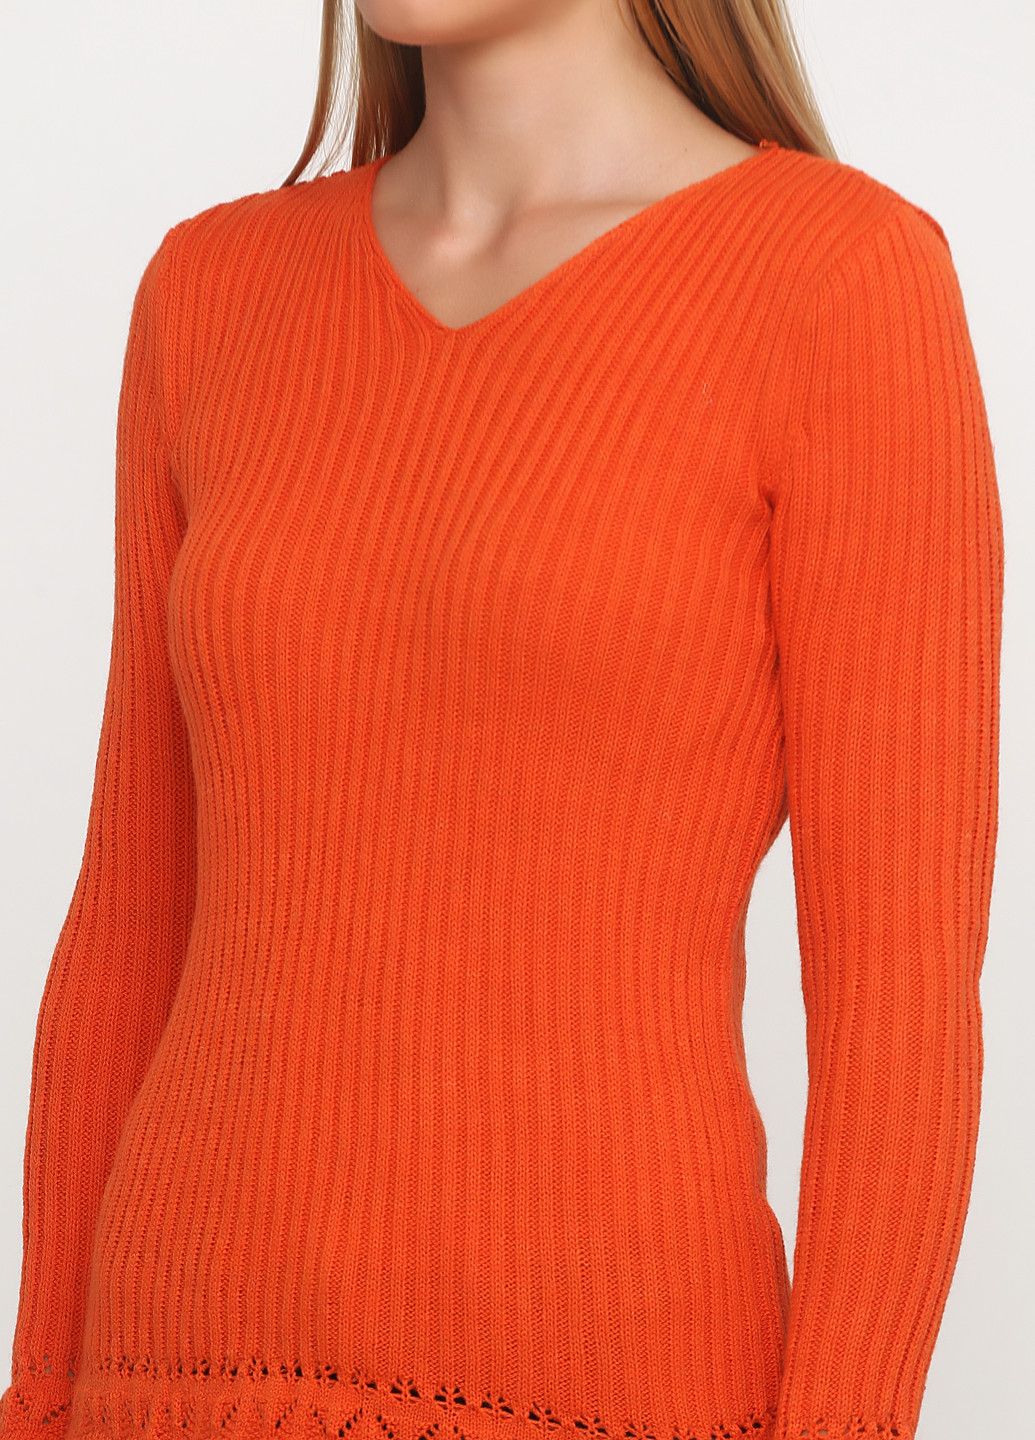 Кирпичный демисезонный пуловер пуловер Askar Triko